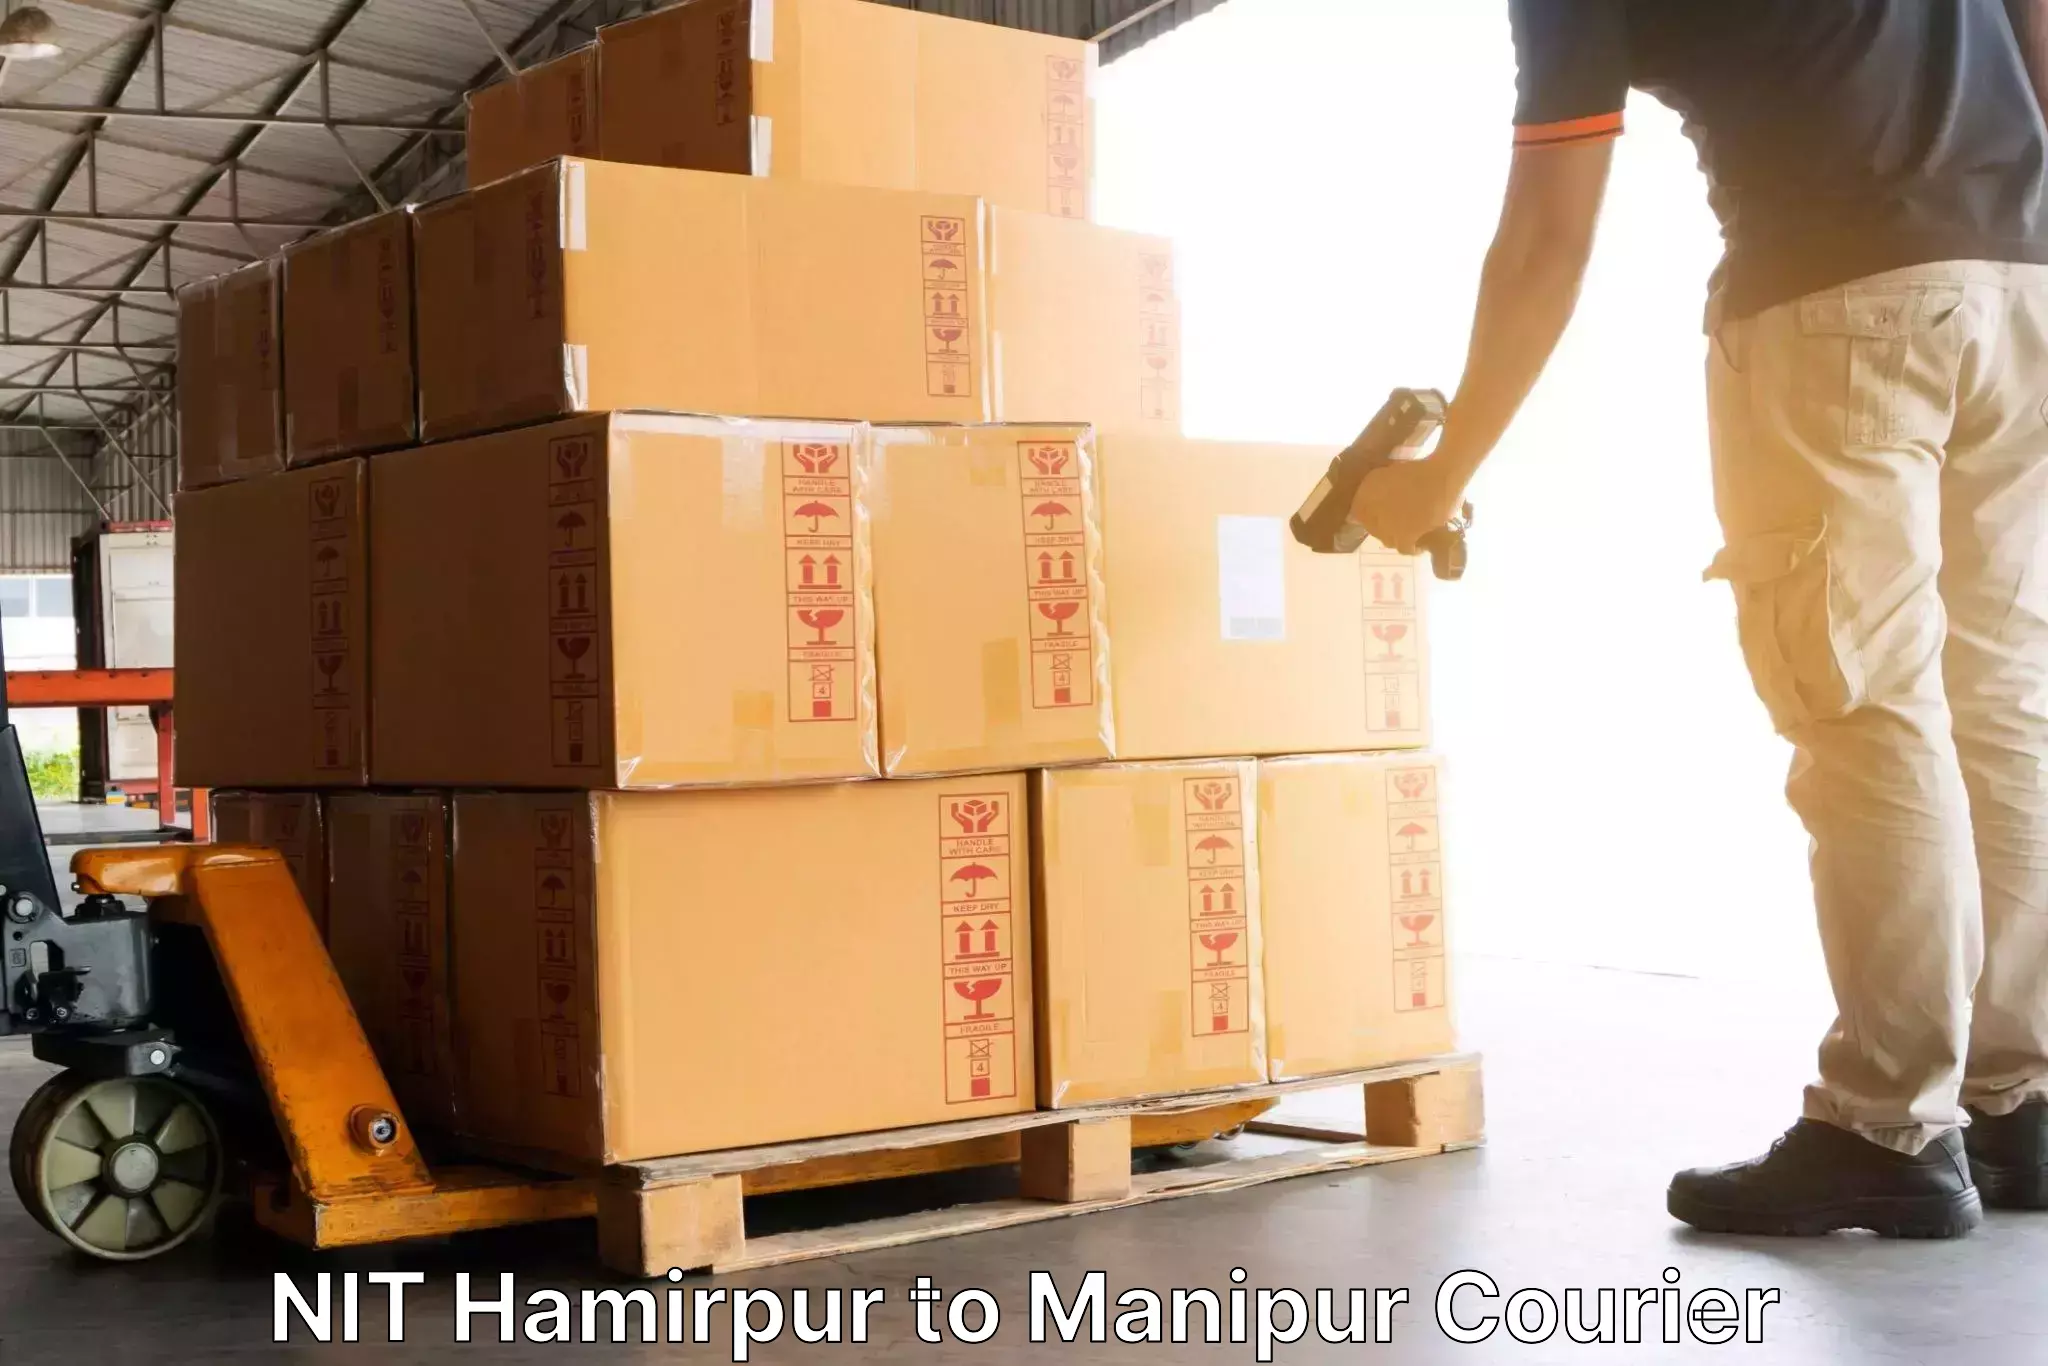 Modern courier technology in NIT Hamirpur to Churachandpur